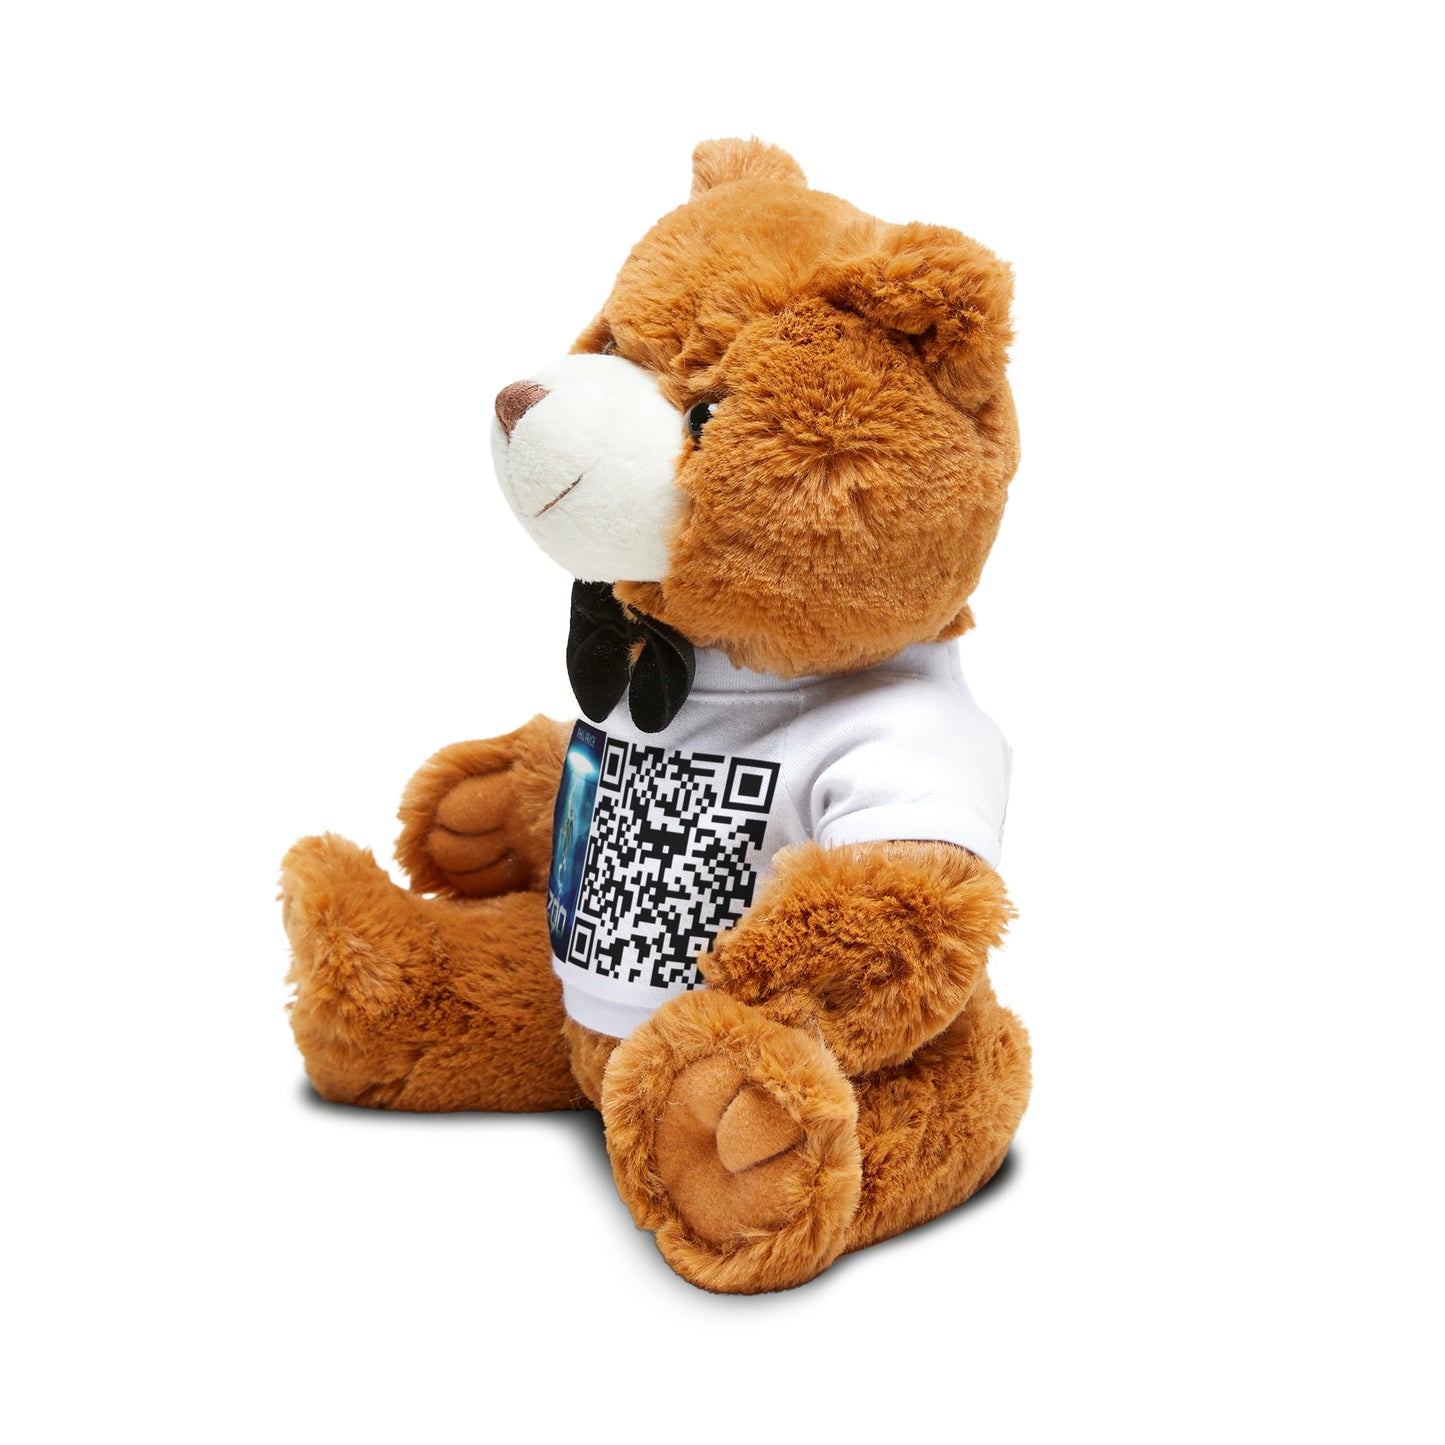 Zoo - Teddy Bear